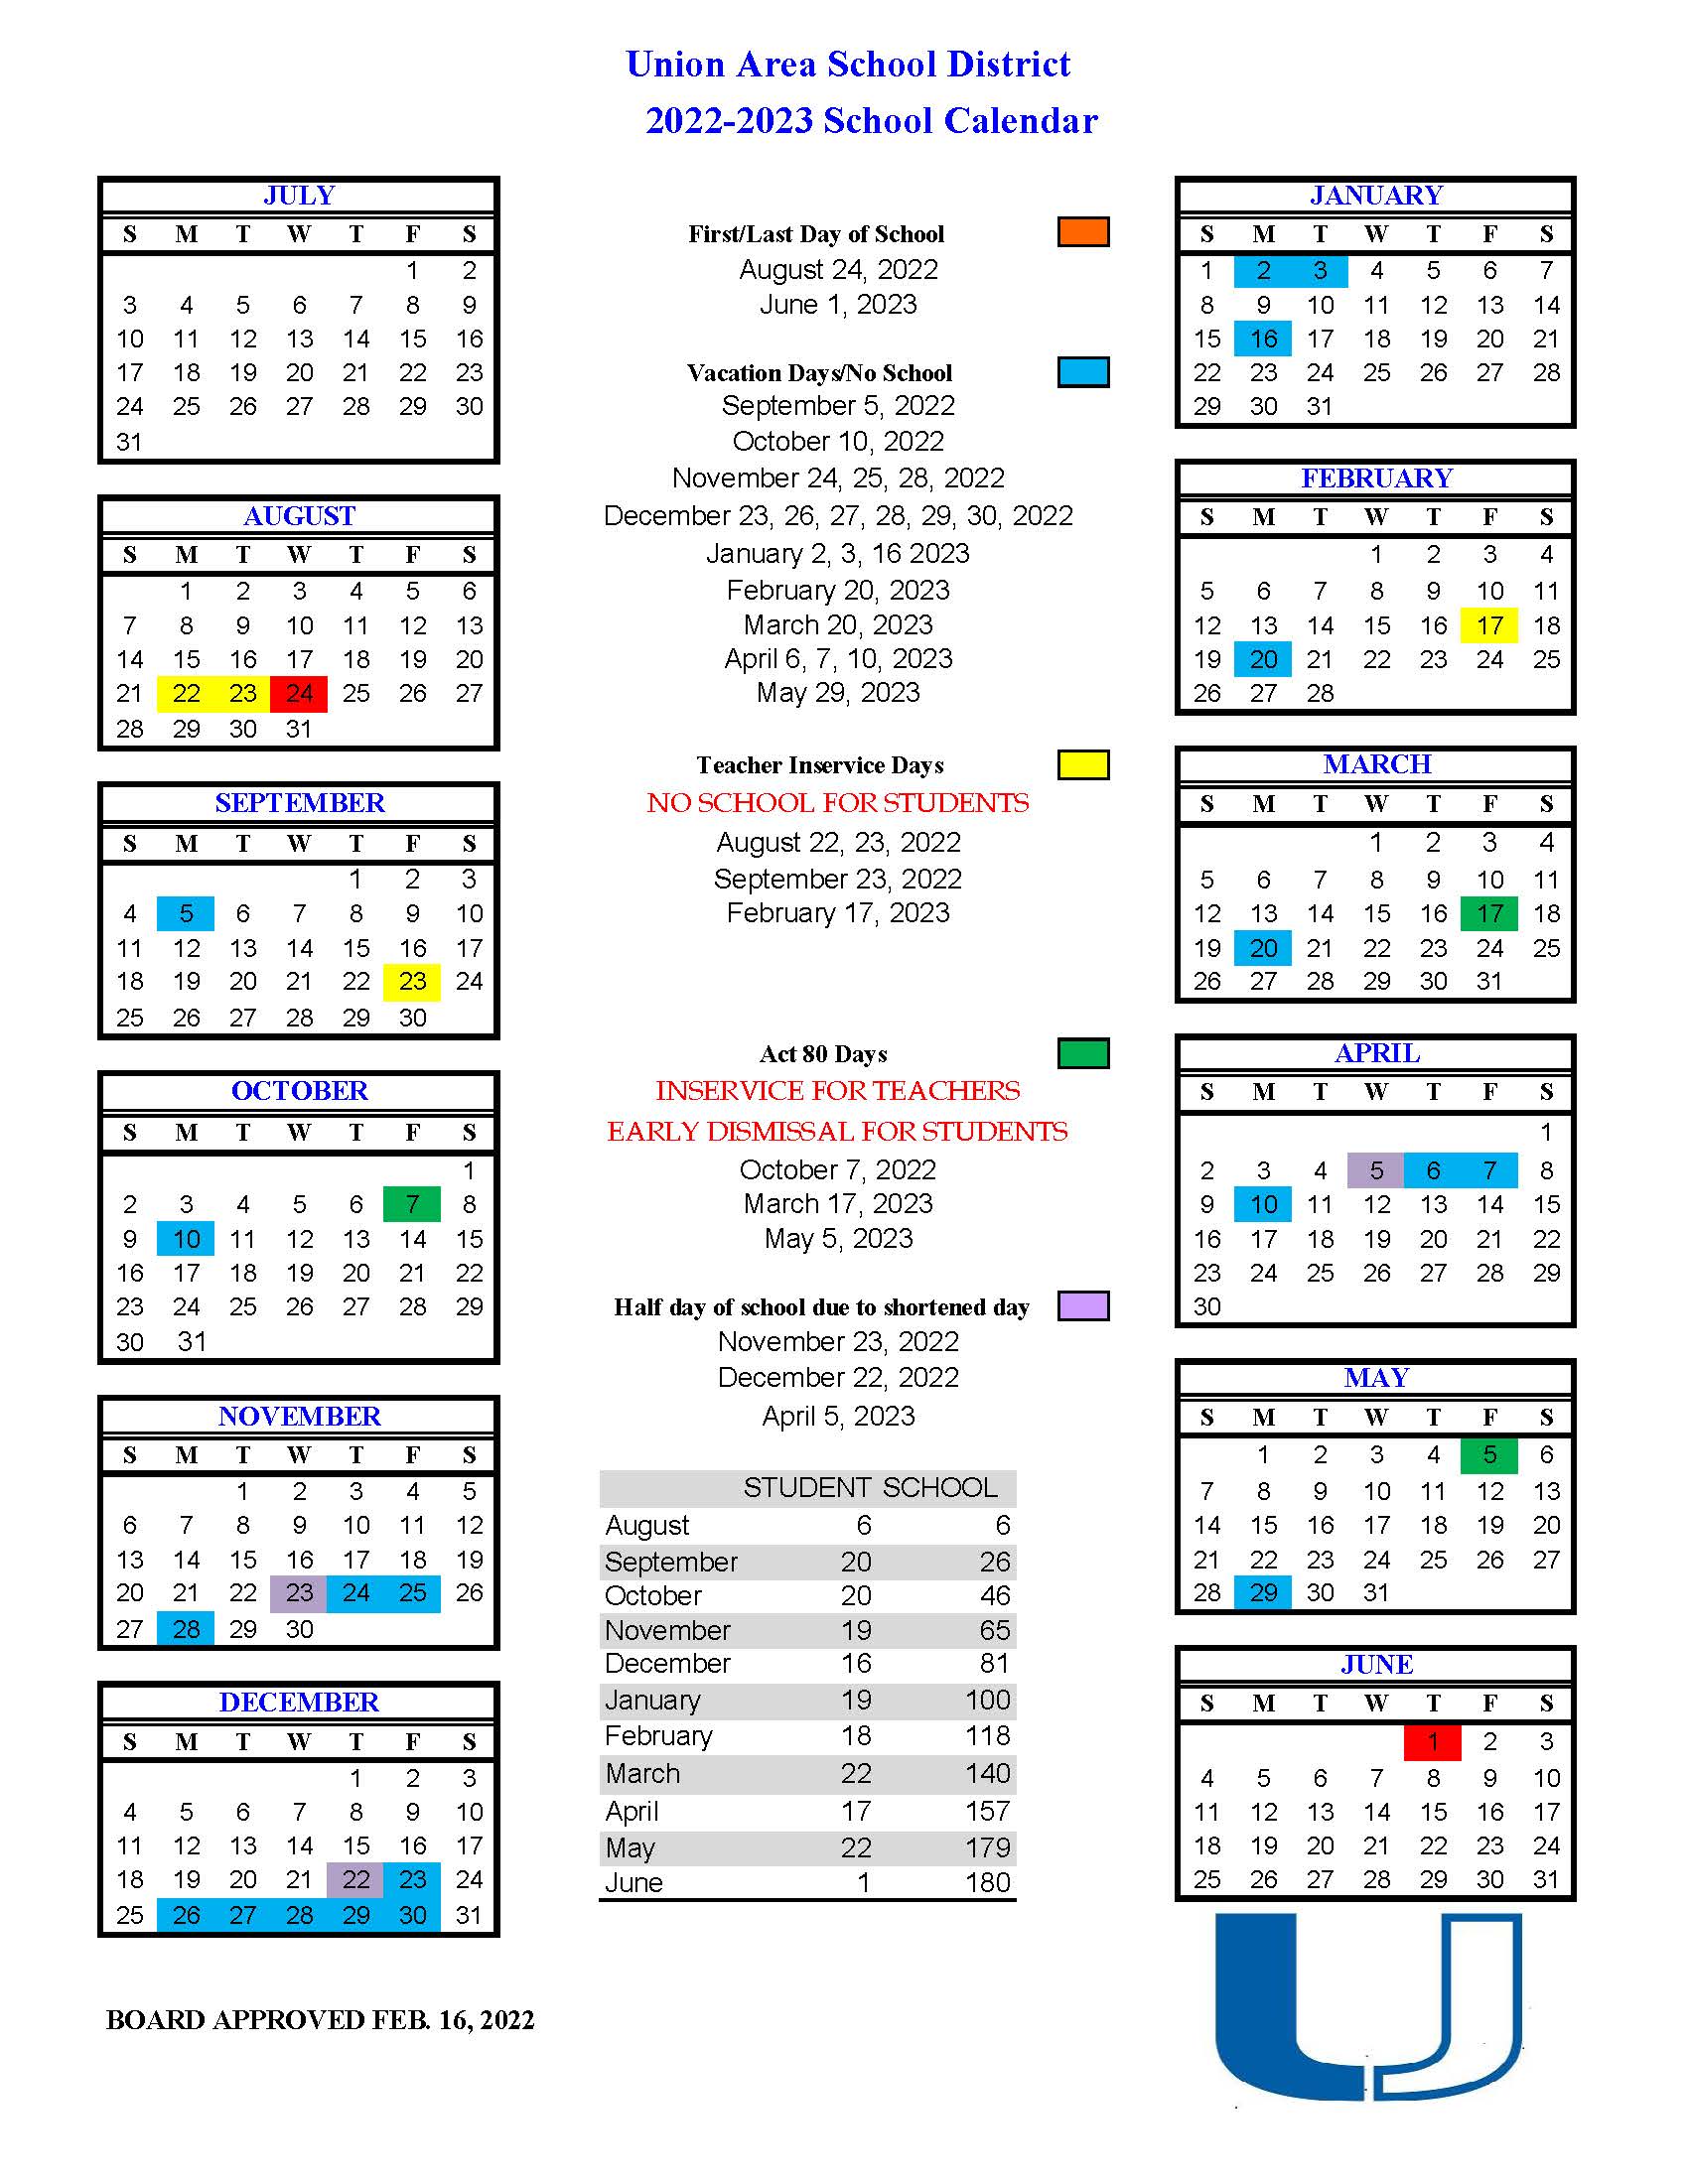 School Calendar Union Area School District